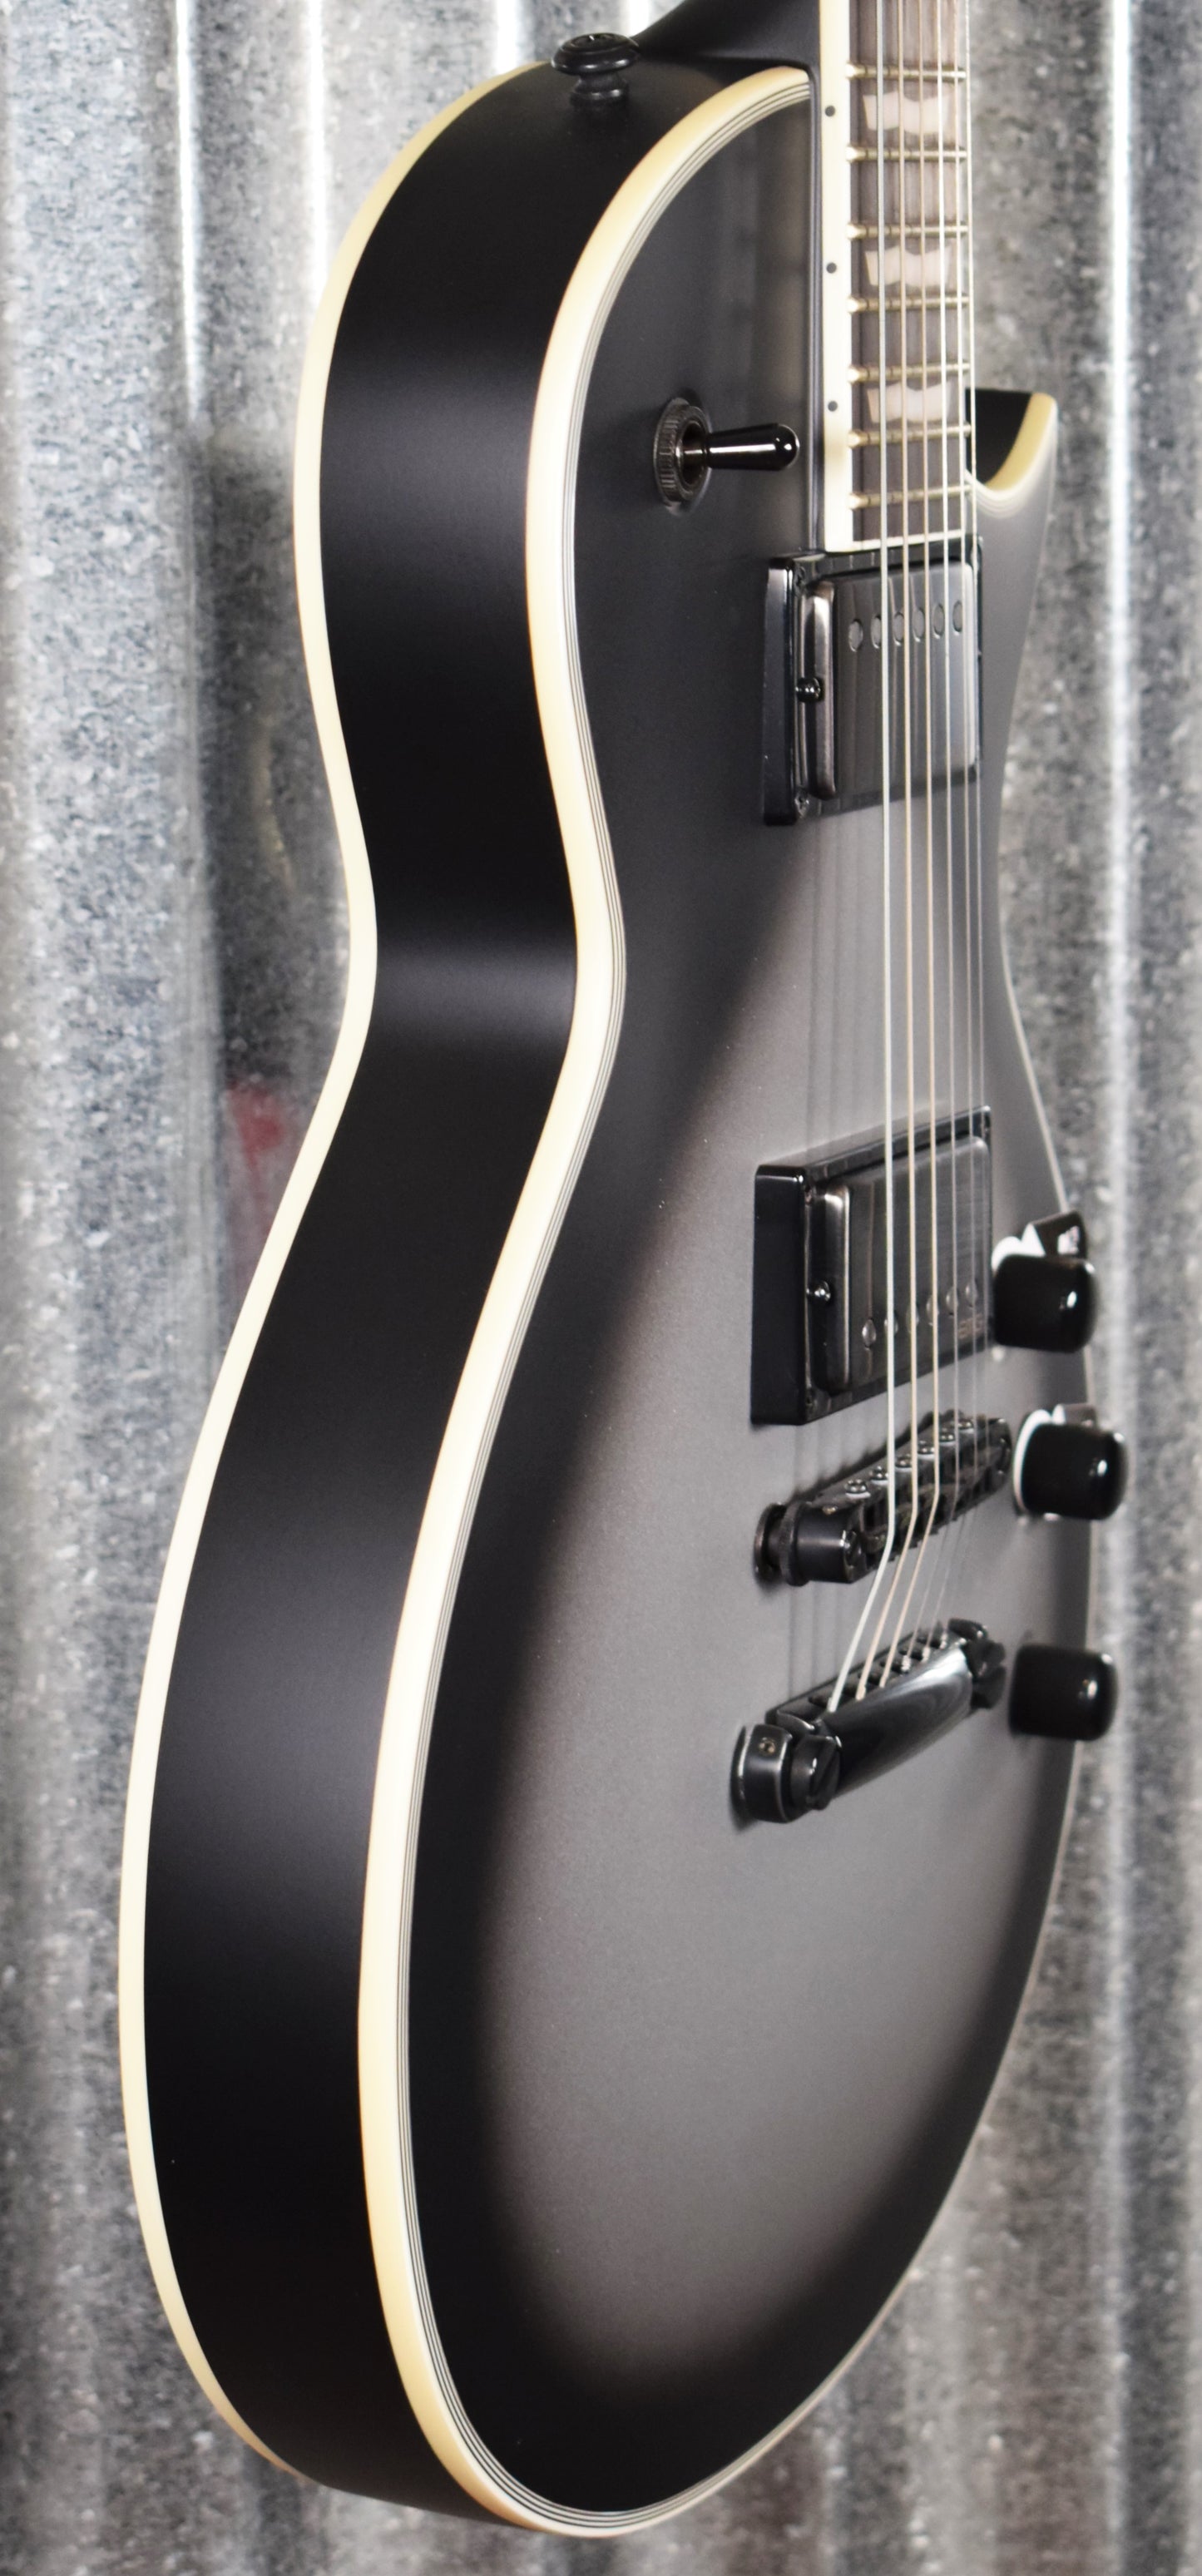 ESP LTD EC-1001T Deluxe Custom Silver Sunburst Satin EMG Guitar EC1001TCTMSSBS #2234 Demo